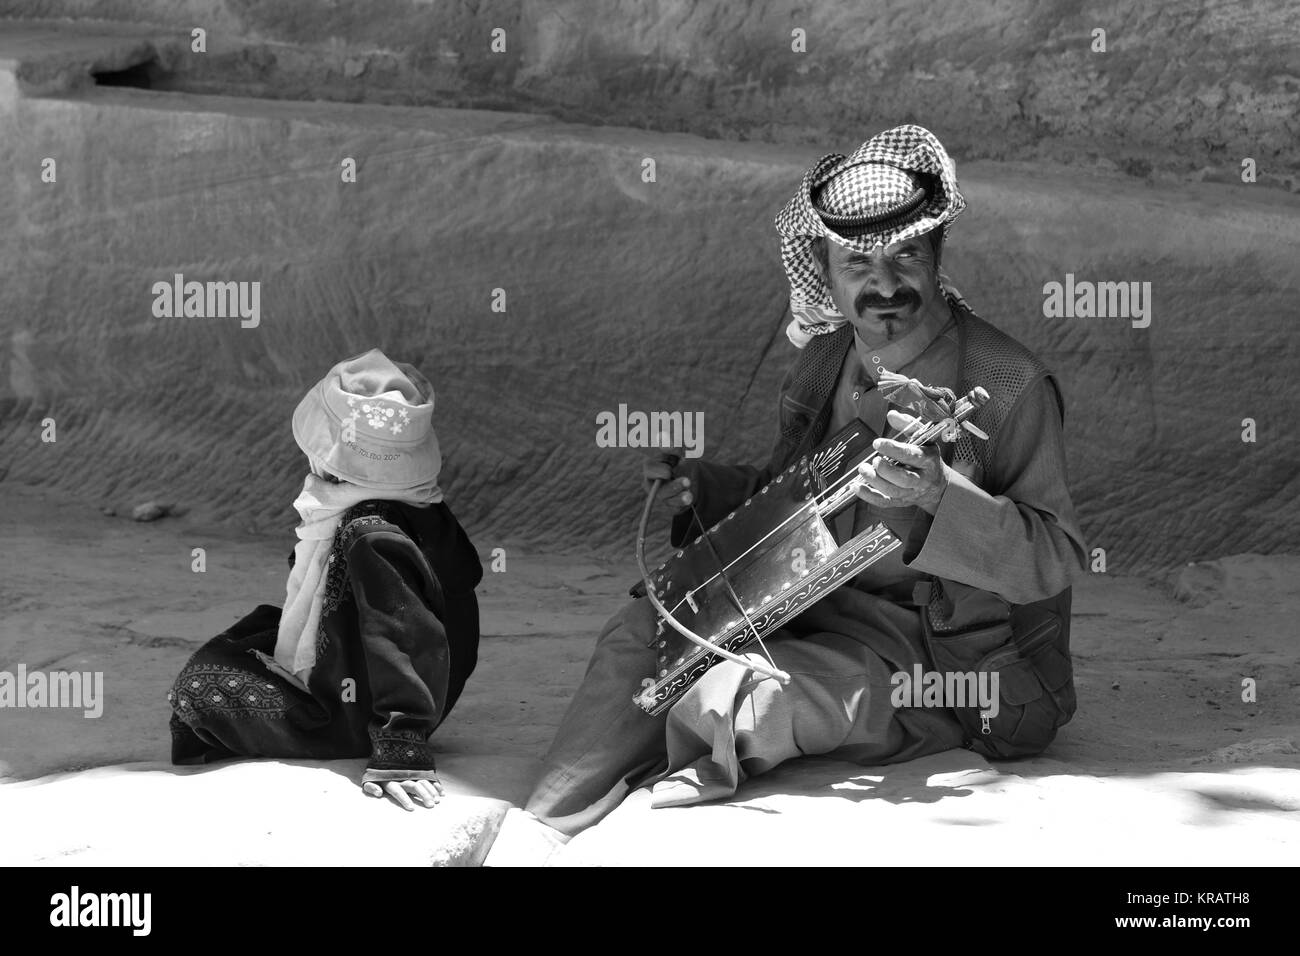 Rebab bedouin Spieler in Petra - 21/05/2017 - Jordanien/Amman - Sguardi Aridi von Ali Raffaele Matar Schuß im Mai 2017 - Arabische typische Musiker gekleidet Stockfoto